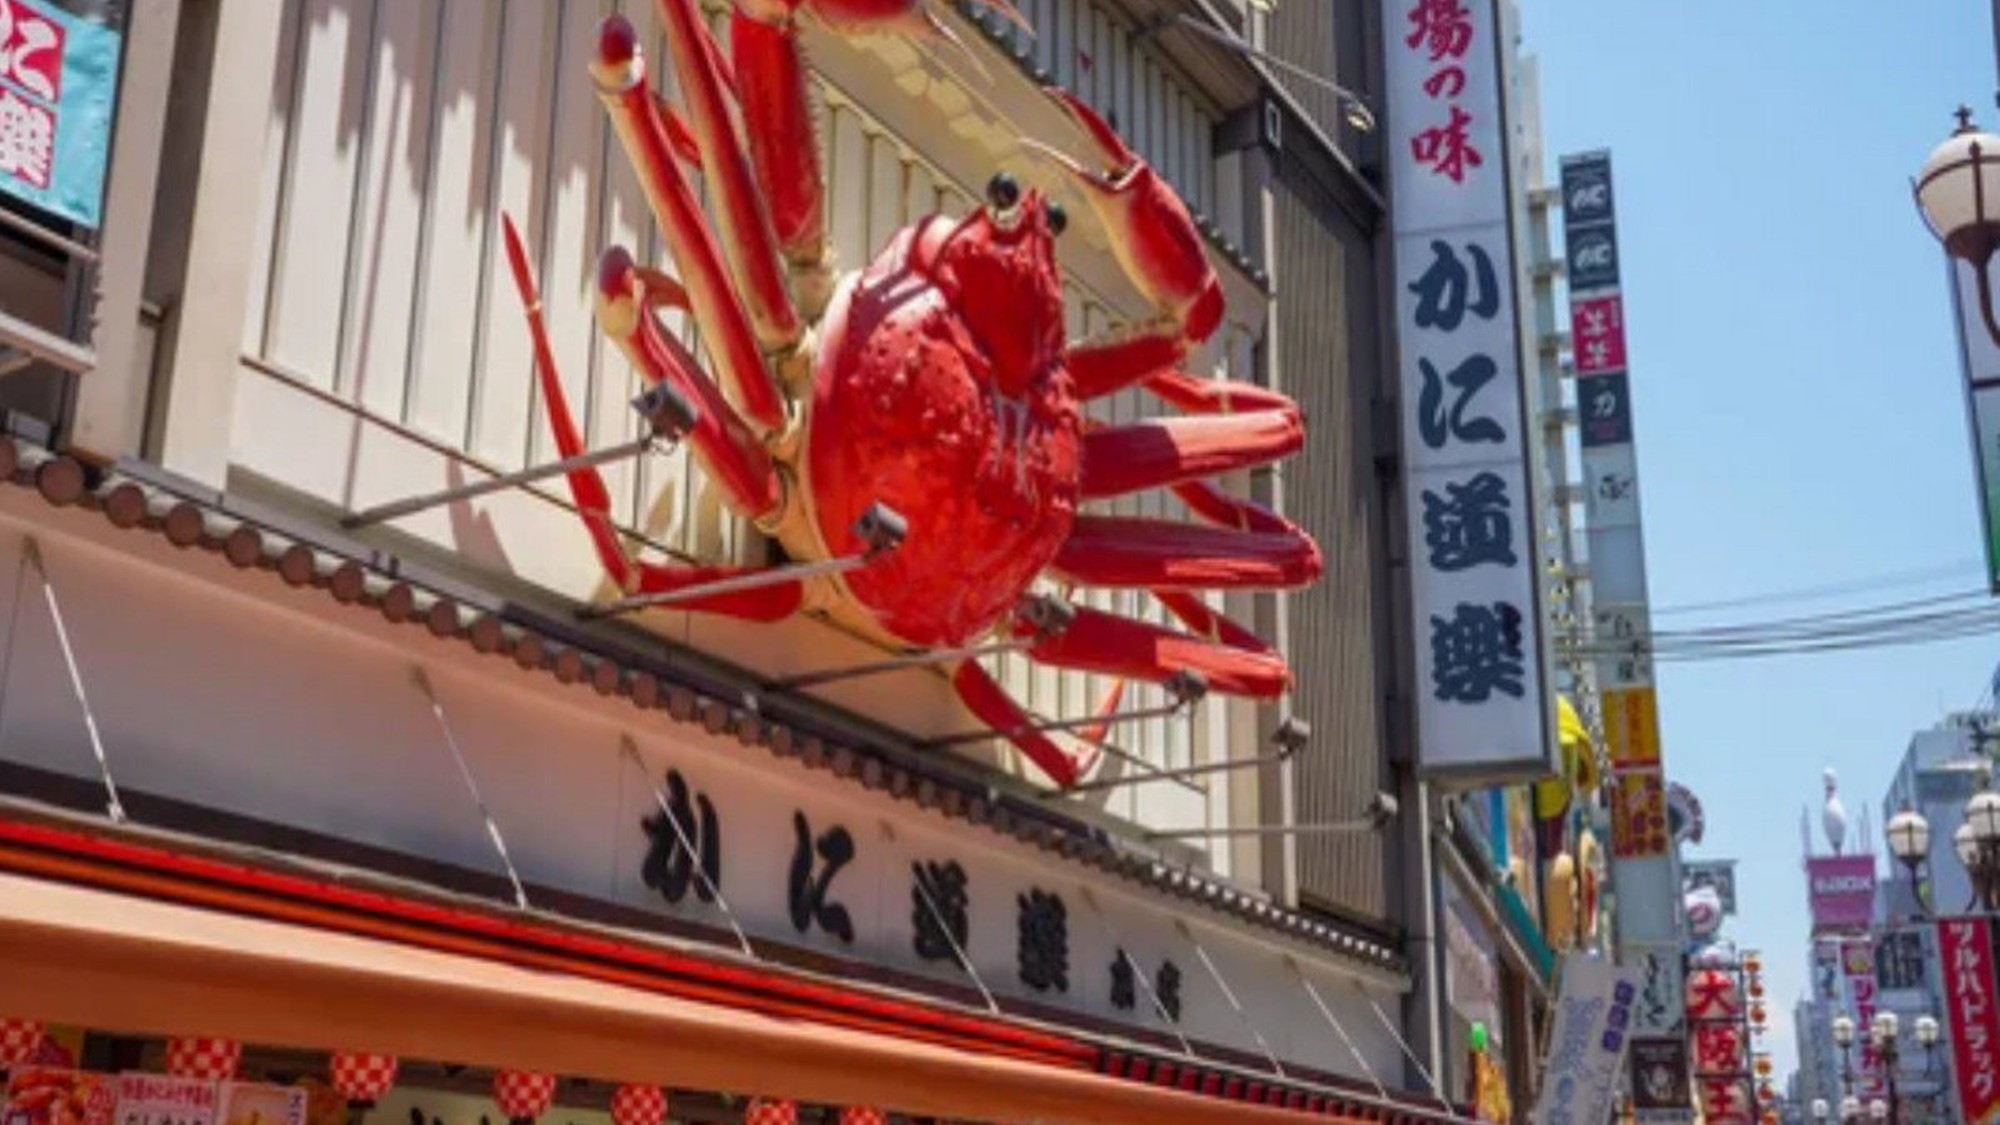 【難波・心斎橋】道頓堀にある、かに道楽は一度は食べてみたい大阪グルメです。